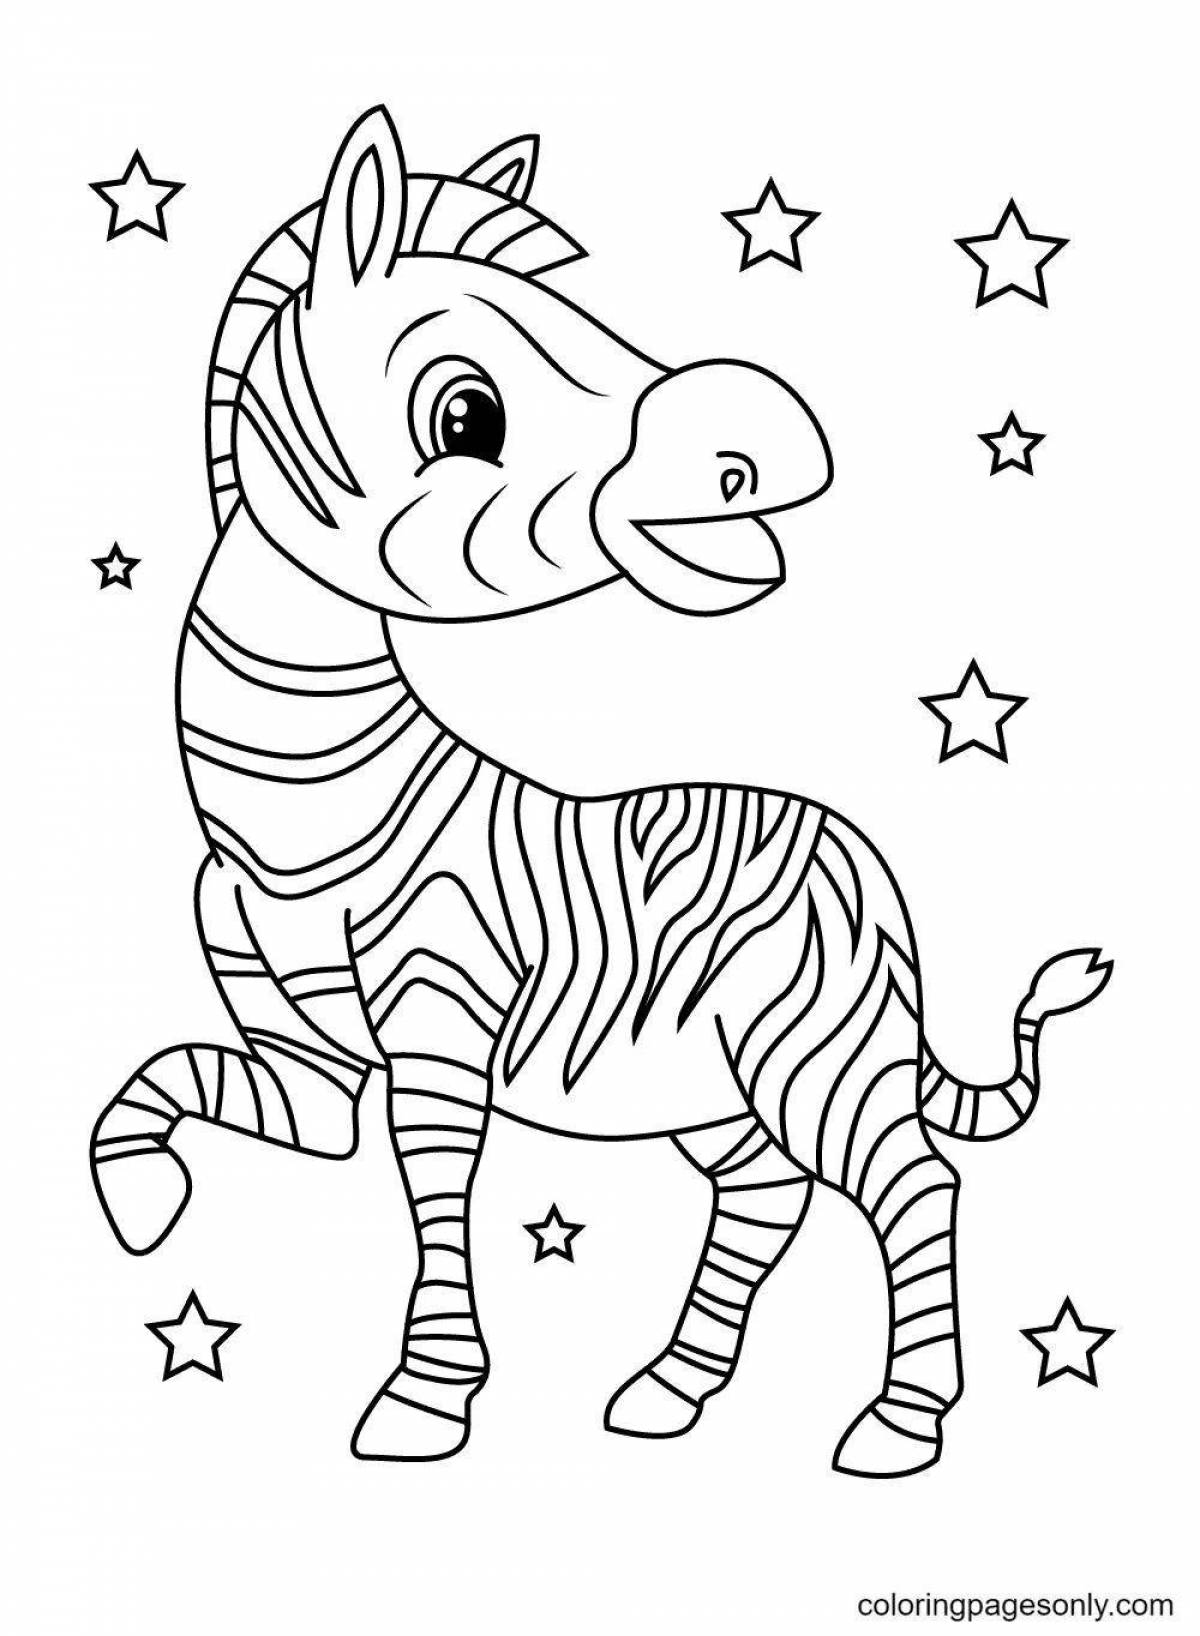 Раскраска радостная зебра для детей 3-4 лет